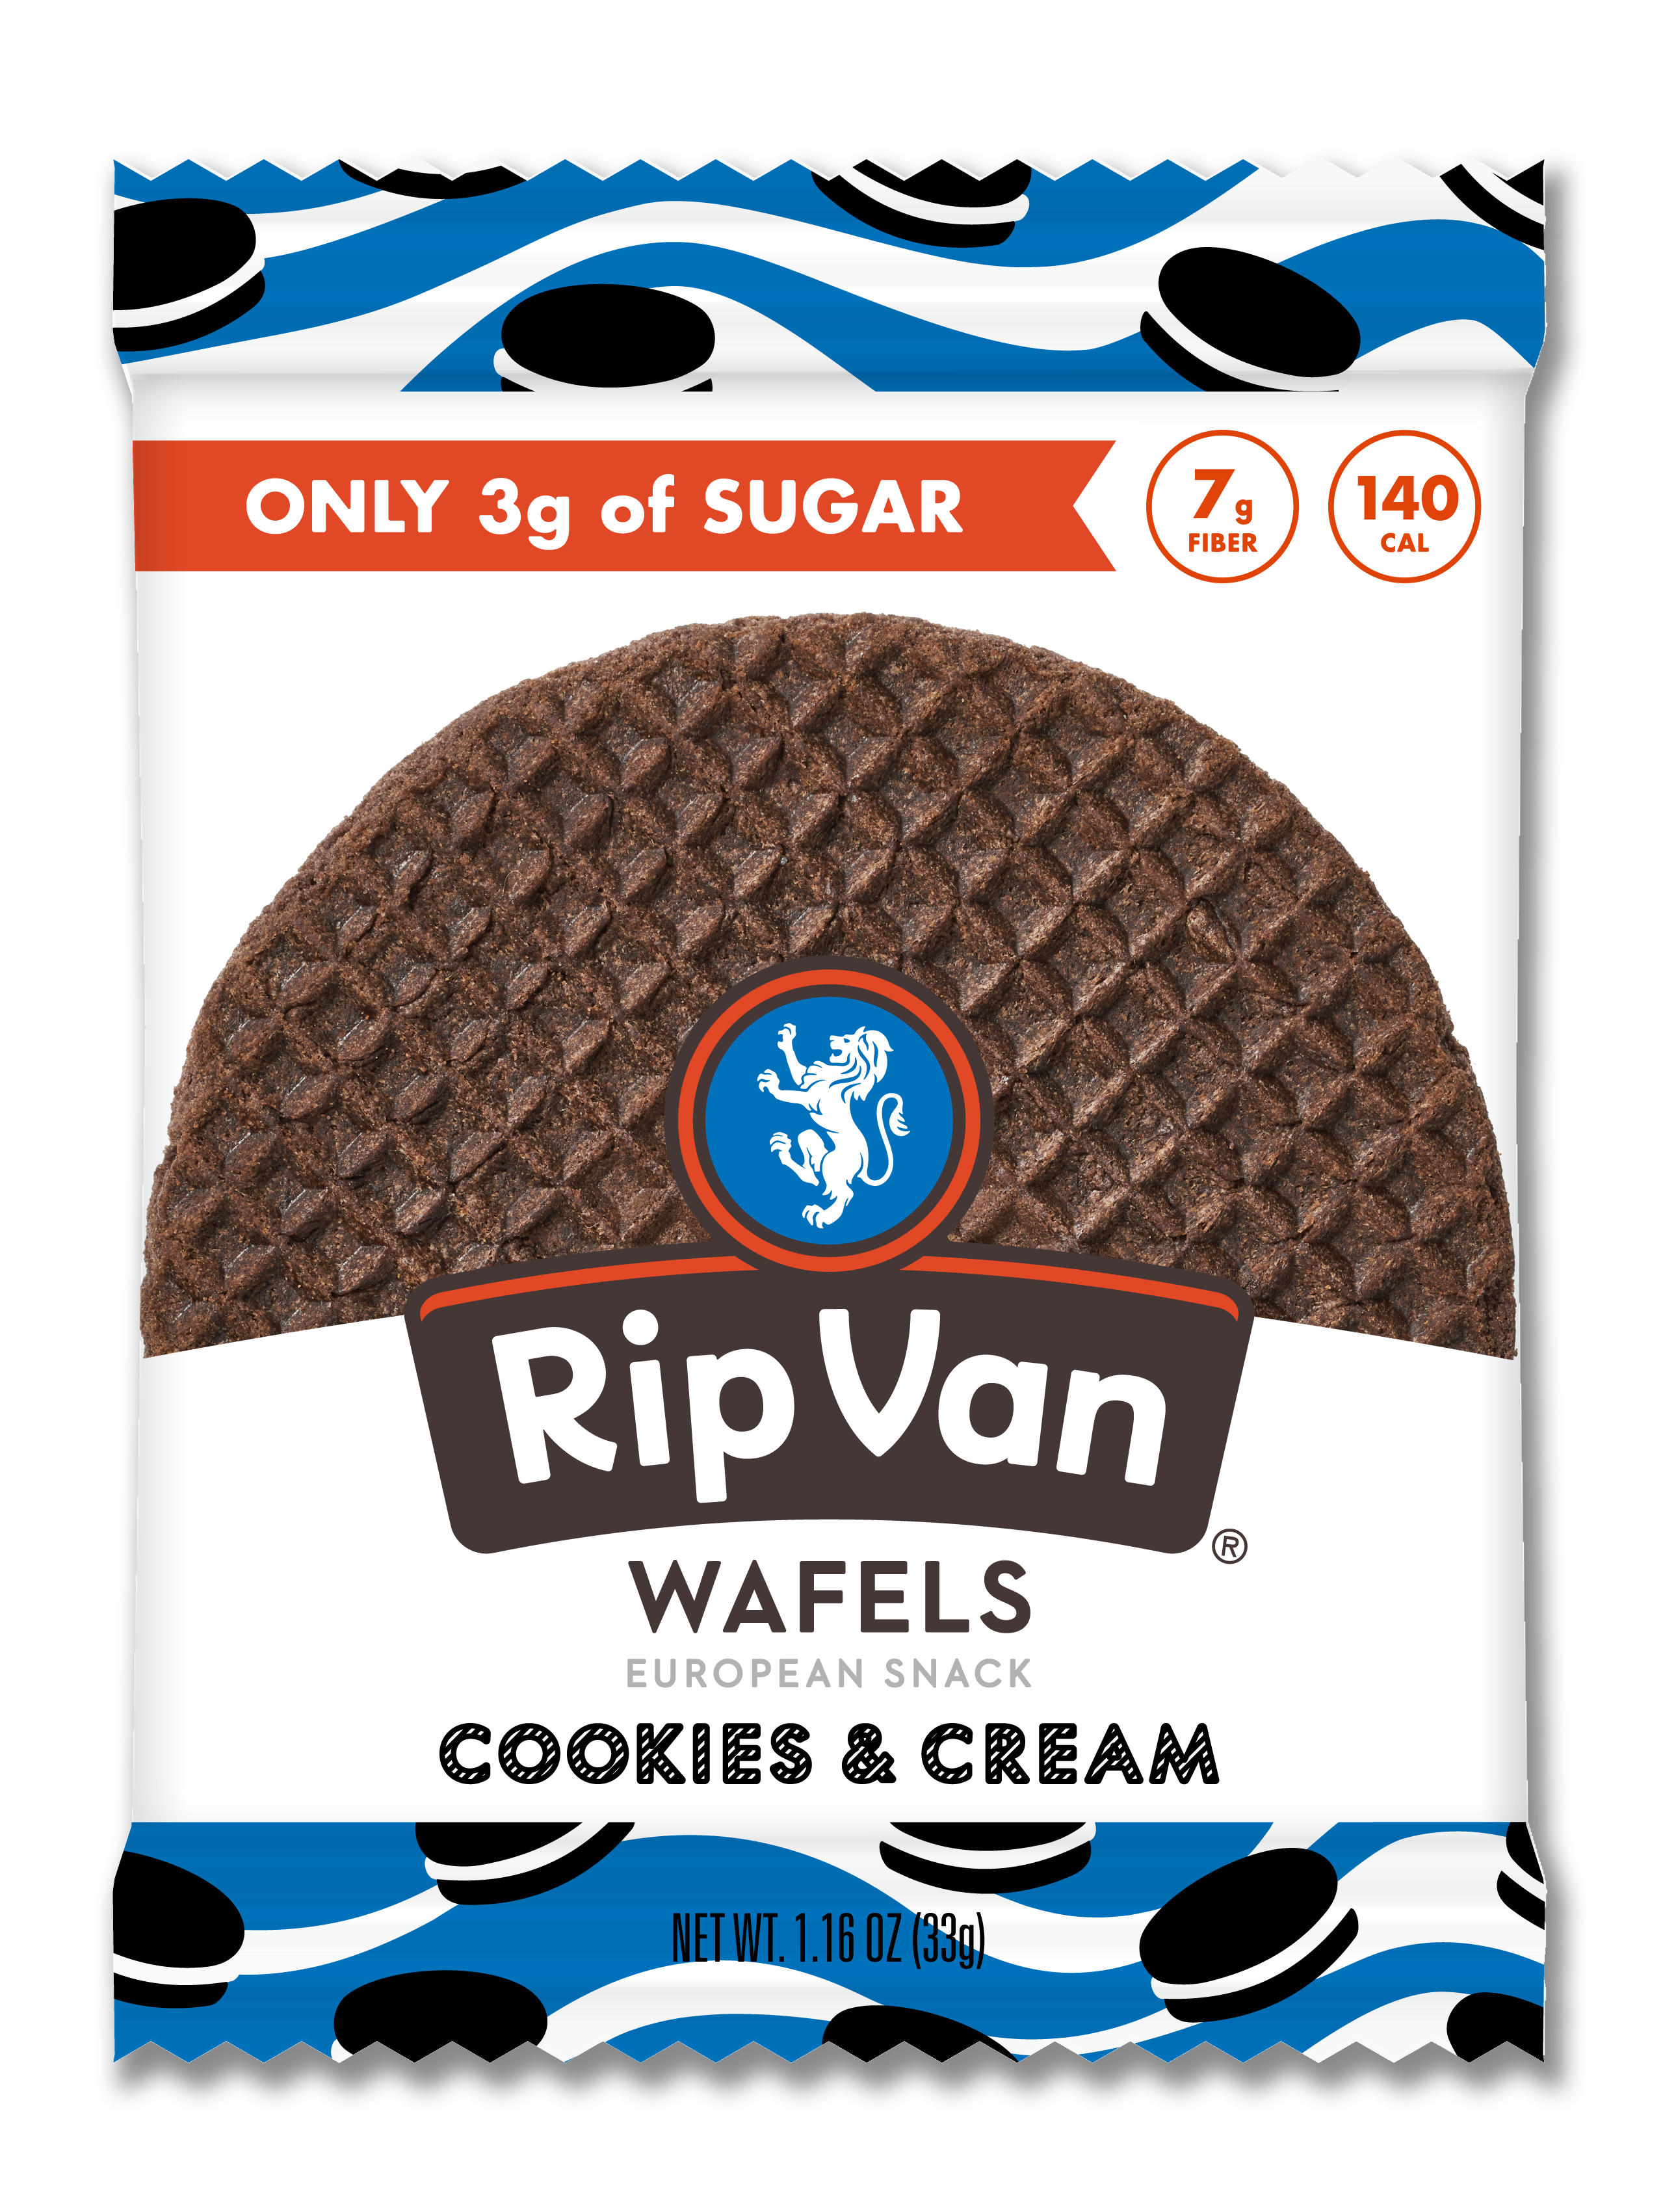 Rip Van Wafels - Low Sugar Singles - Cookies & Cream 4 innerpacks per case 1.2 oz